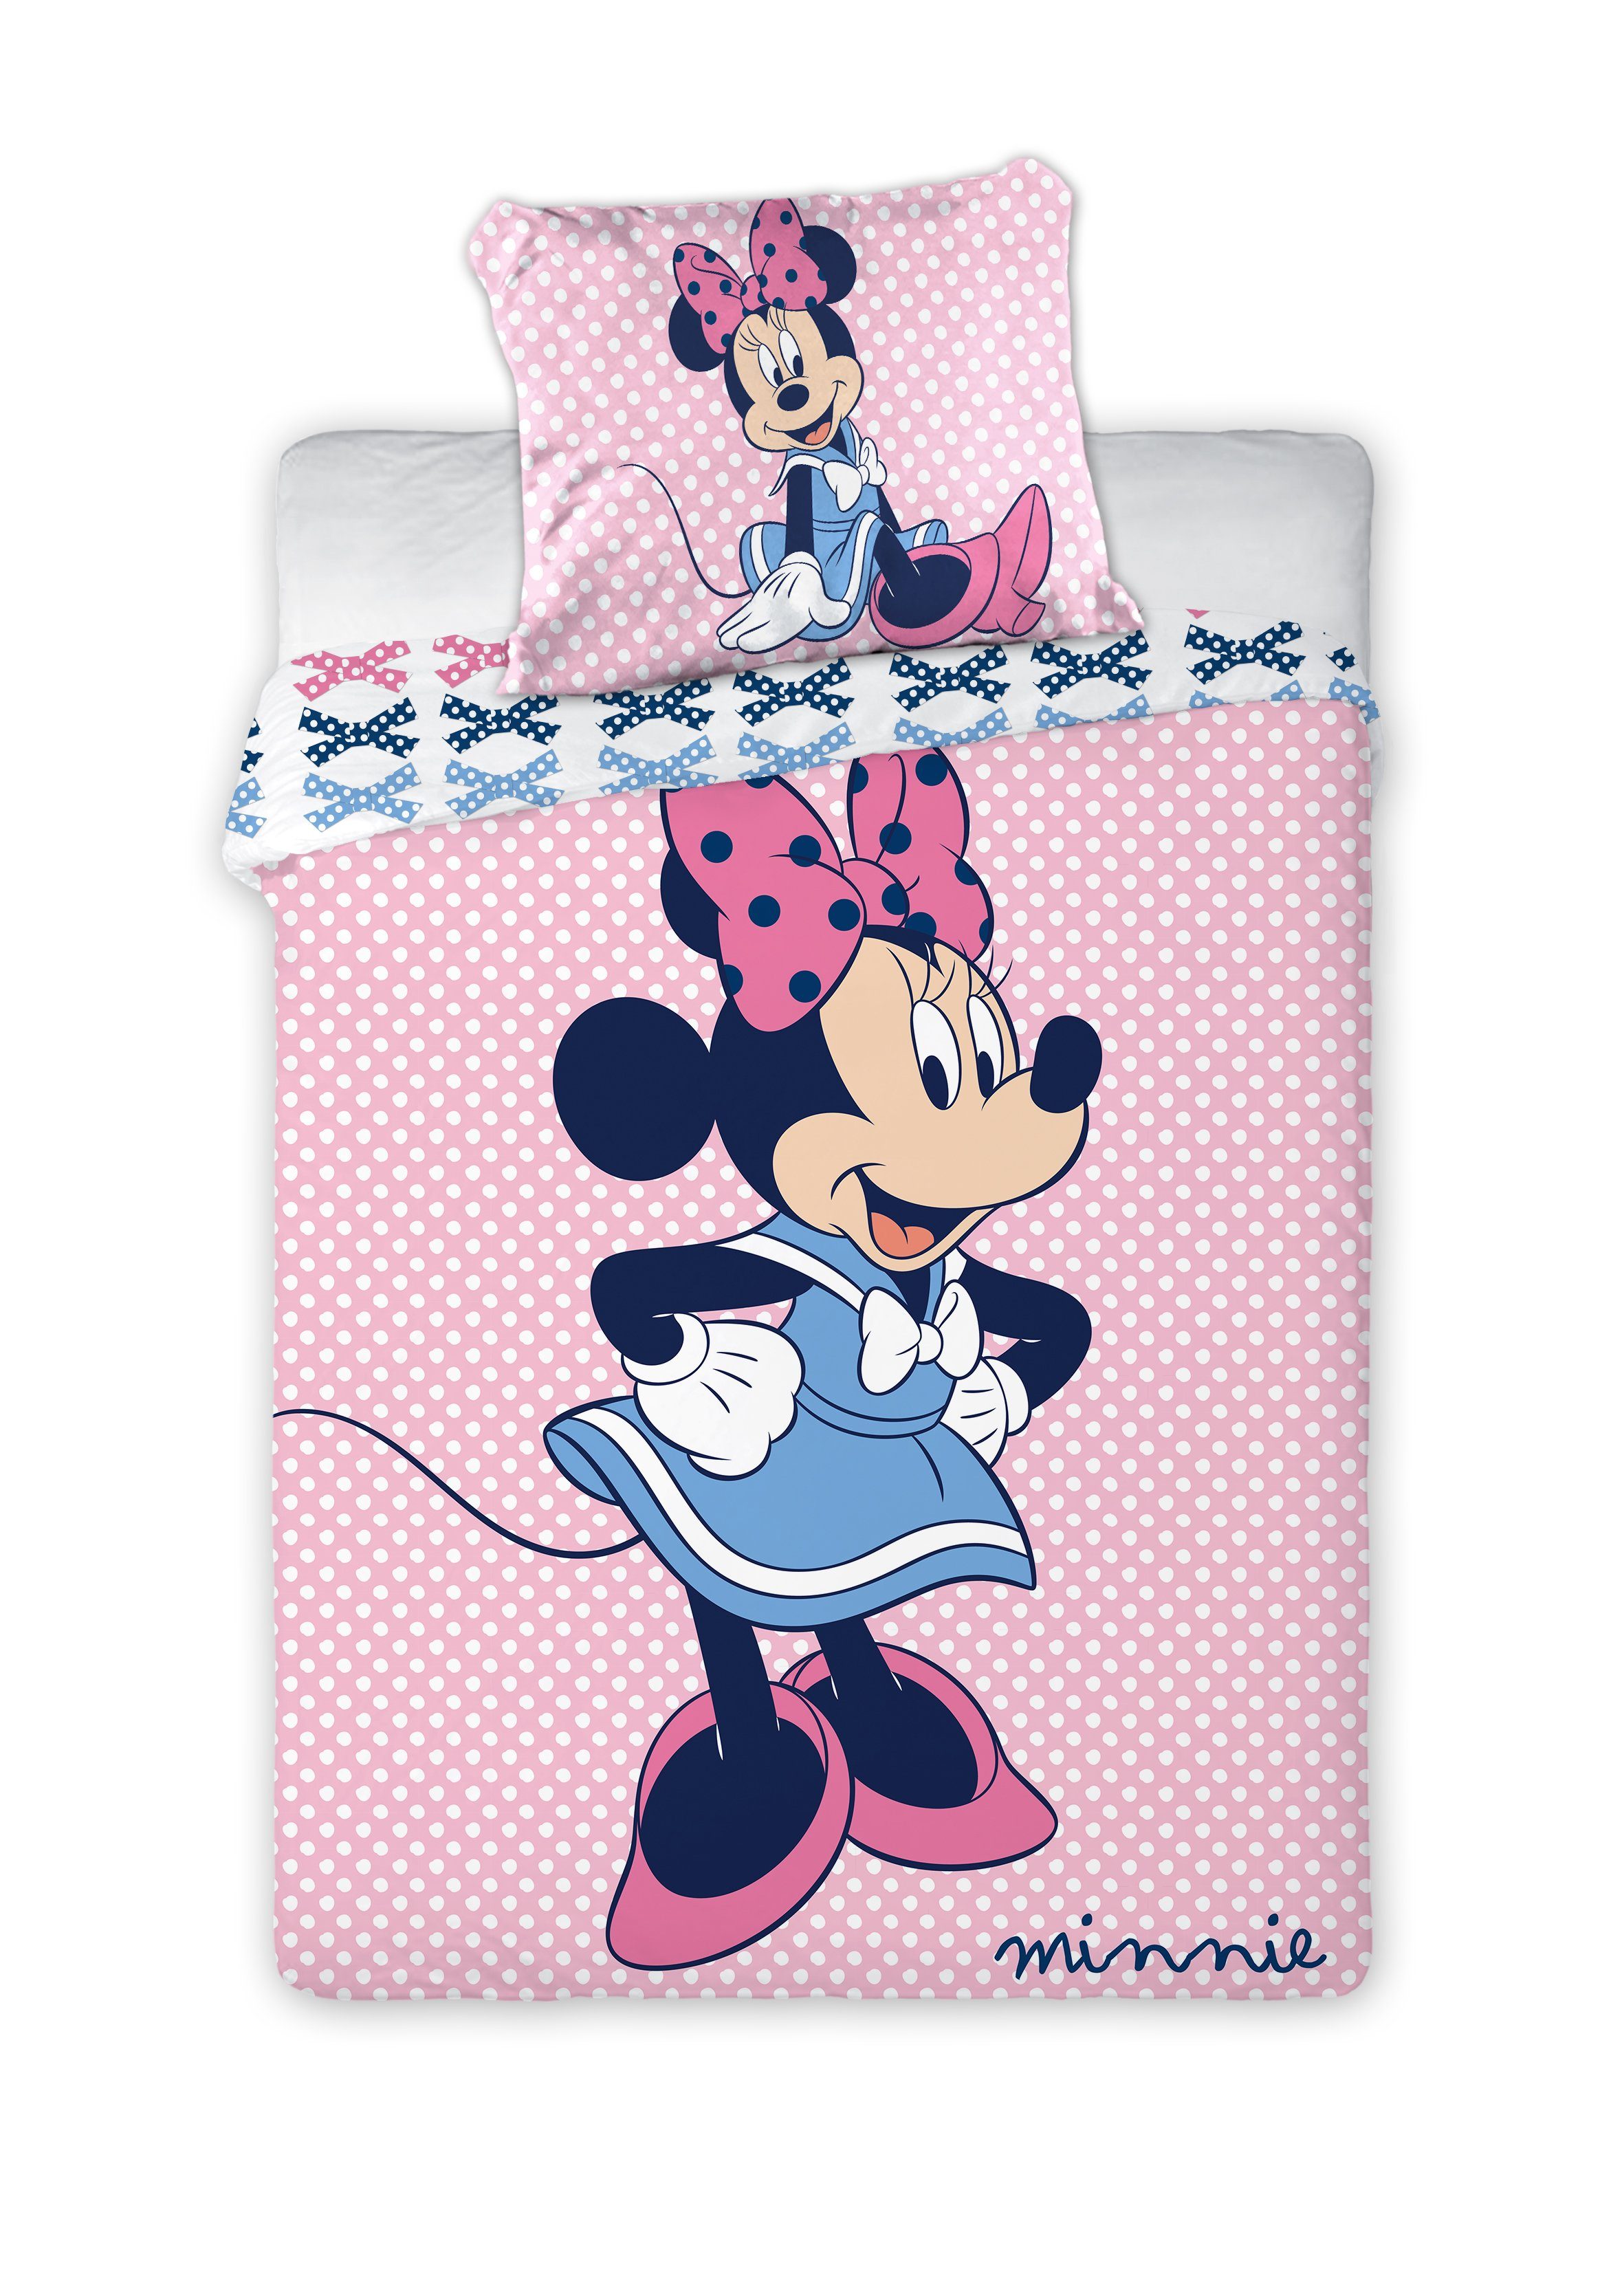 Babybettwäsche Disney Minnie Mouse Babybettwäsche 100x135 cm, Disney